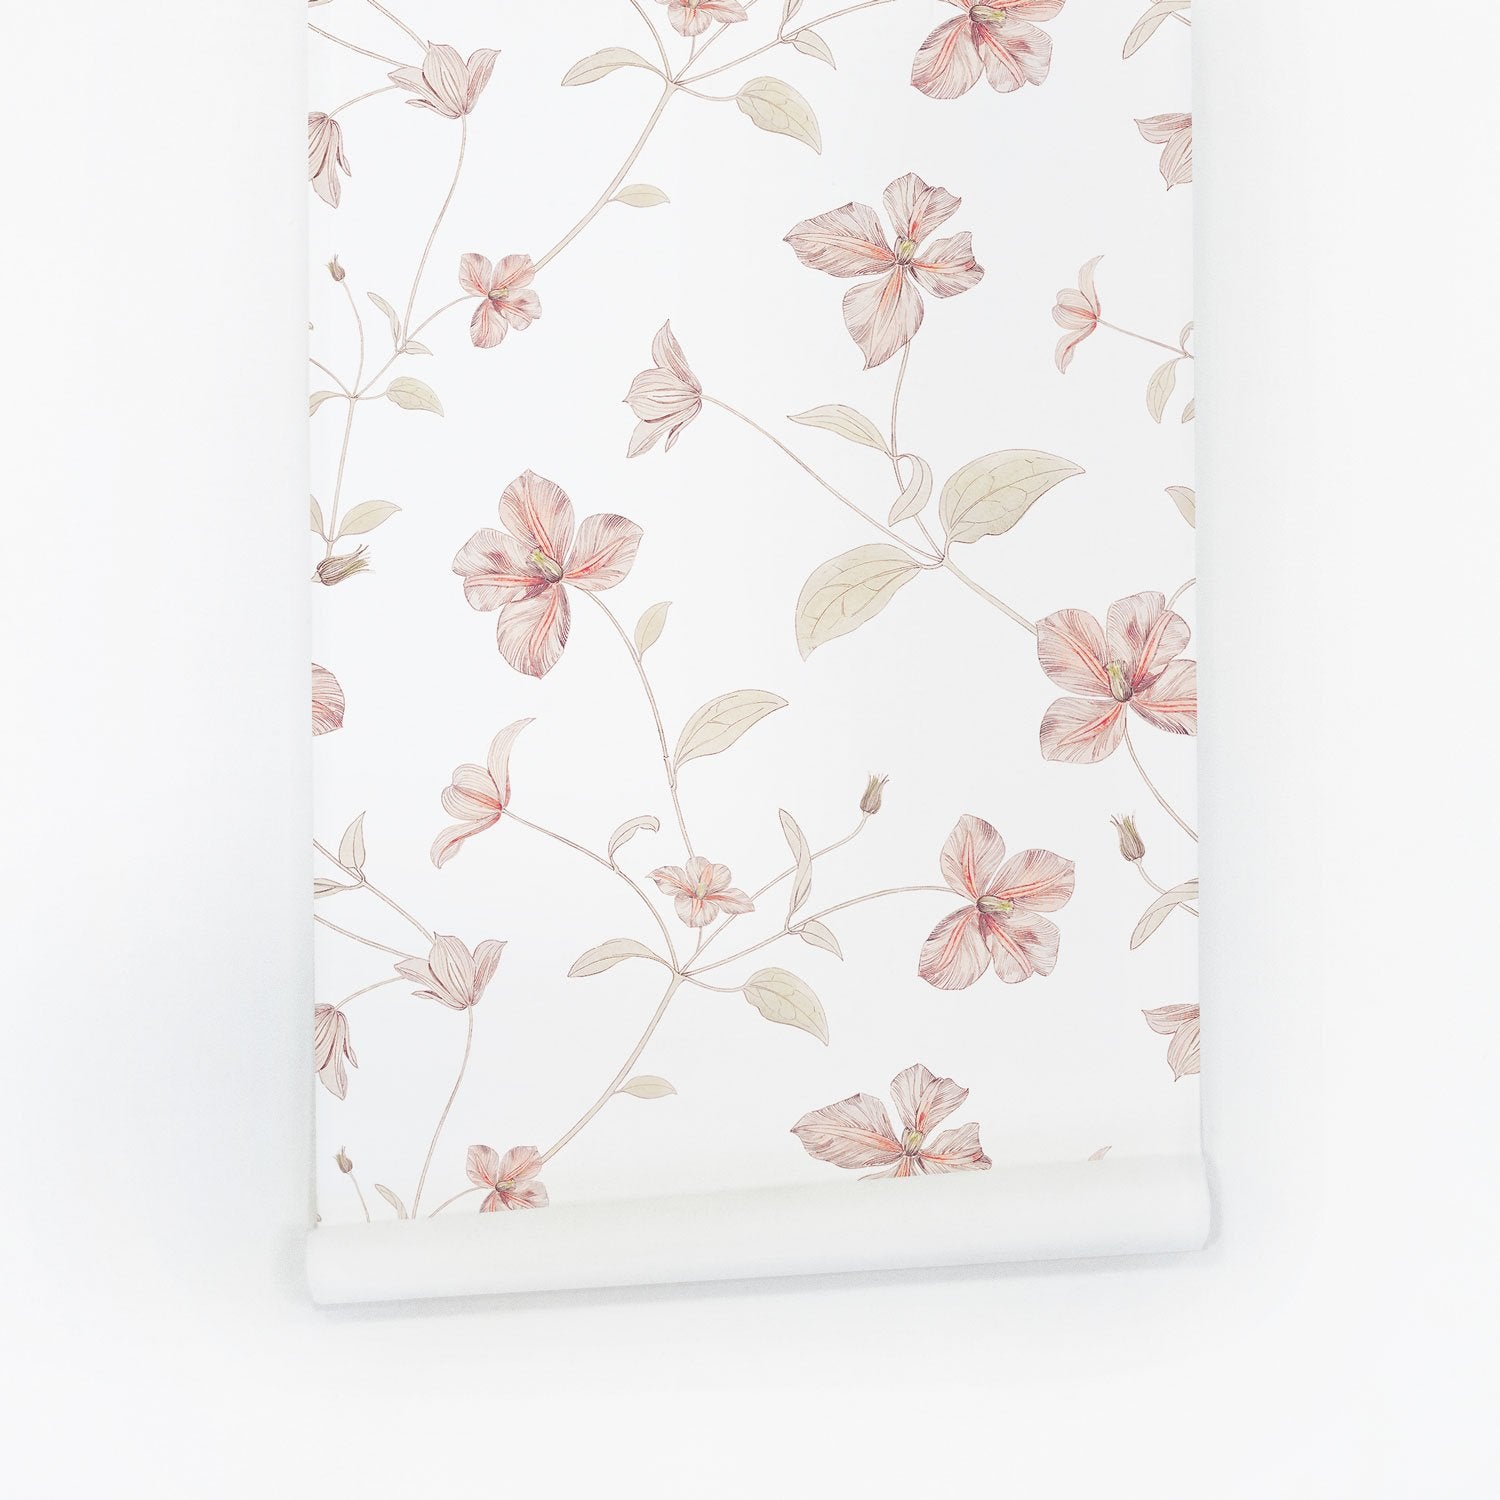 Soft Pink Floral Print Wallpaper - Self-adhesive / Sample